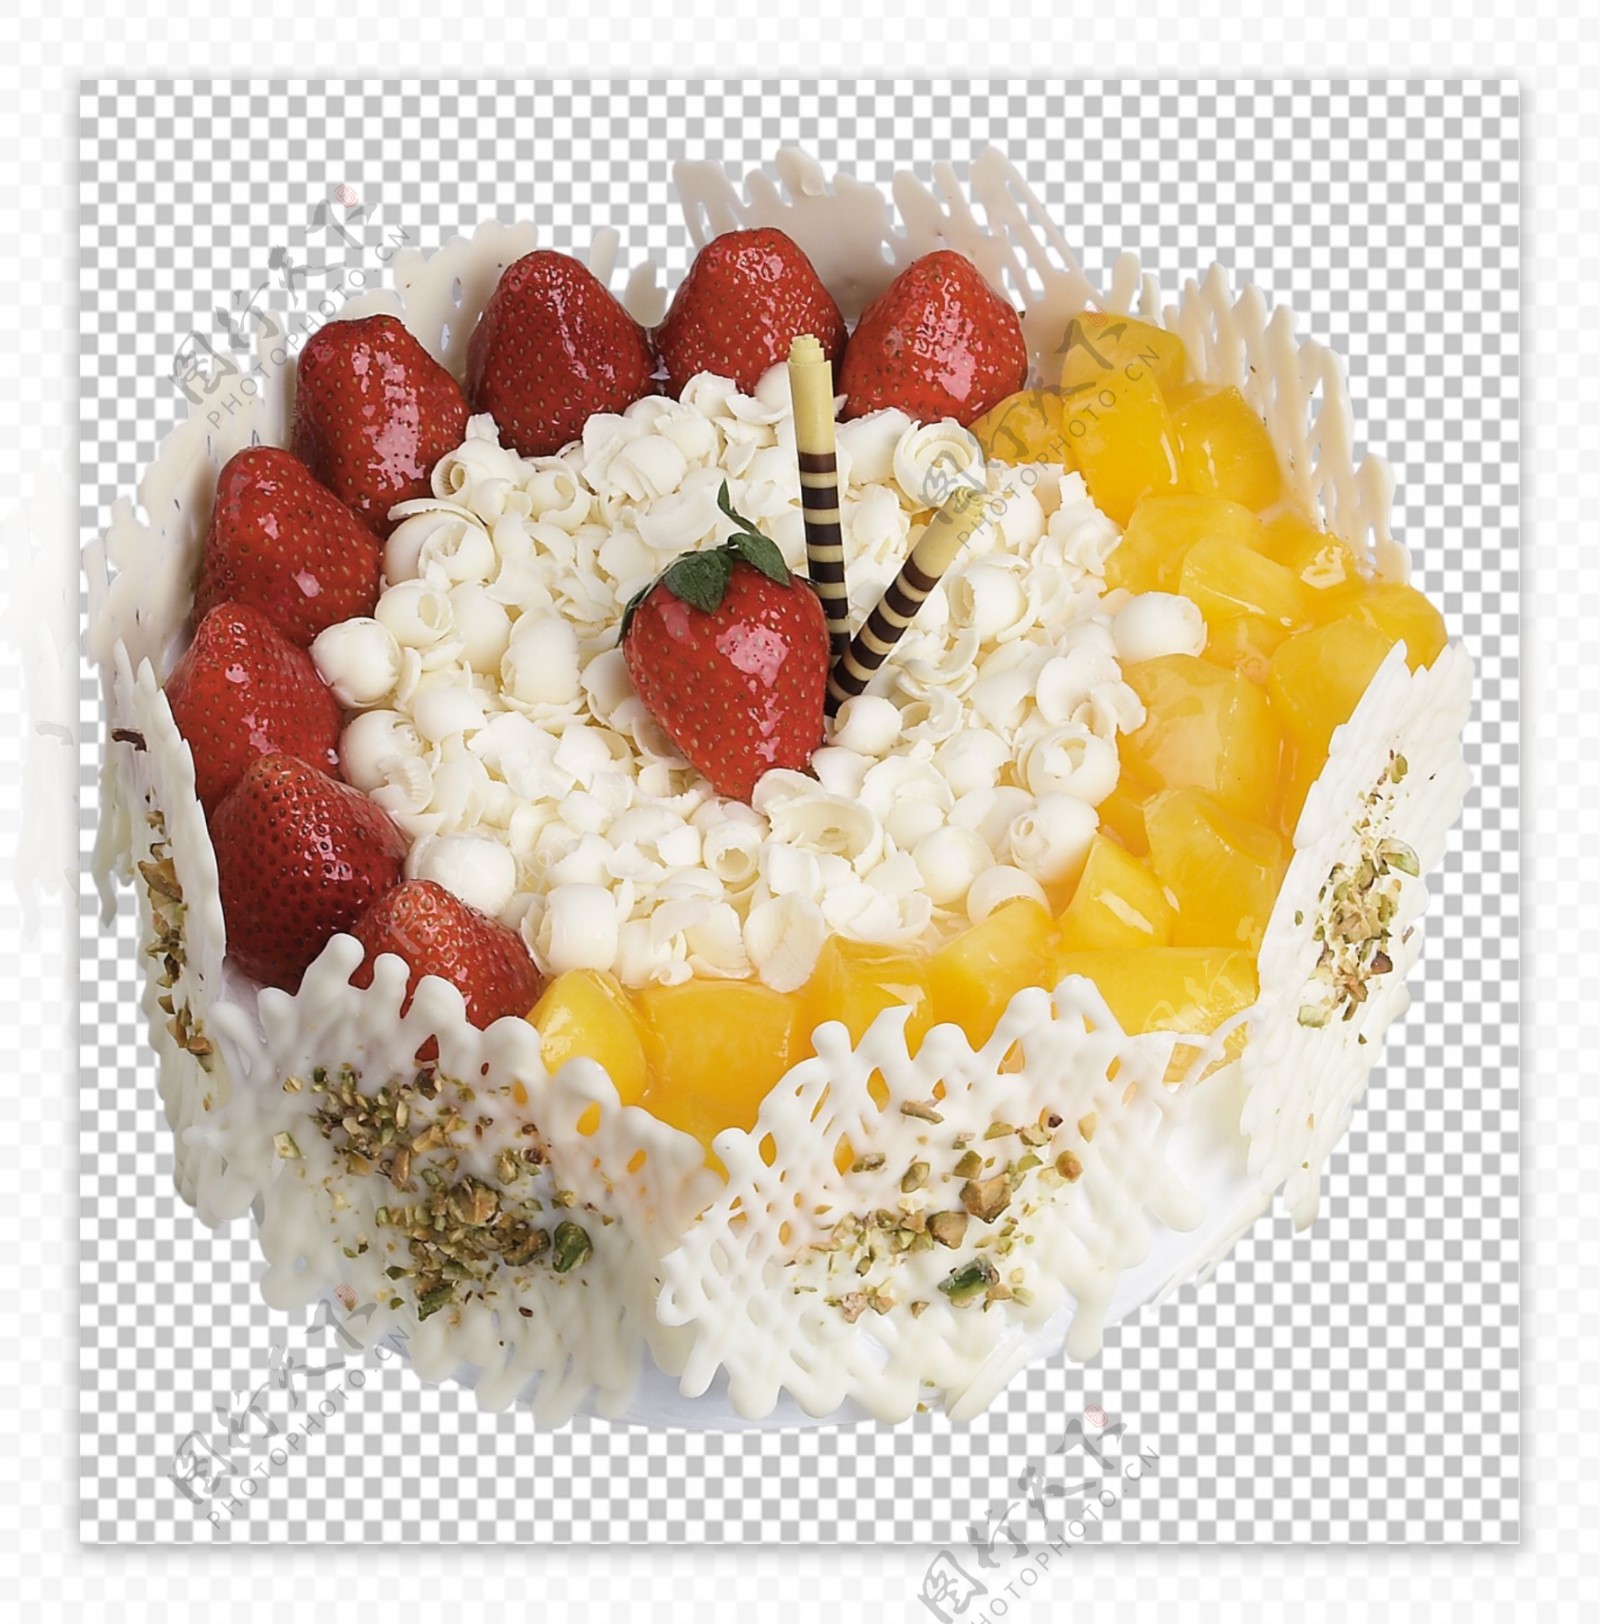 水果奶油生日蛋糕的做法_【图解】水果奶油生日蛋糕怎么做如何做好吃_水果奶油生日蛋糕家常做法大全_大头芳芳_豆果美食